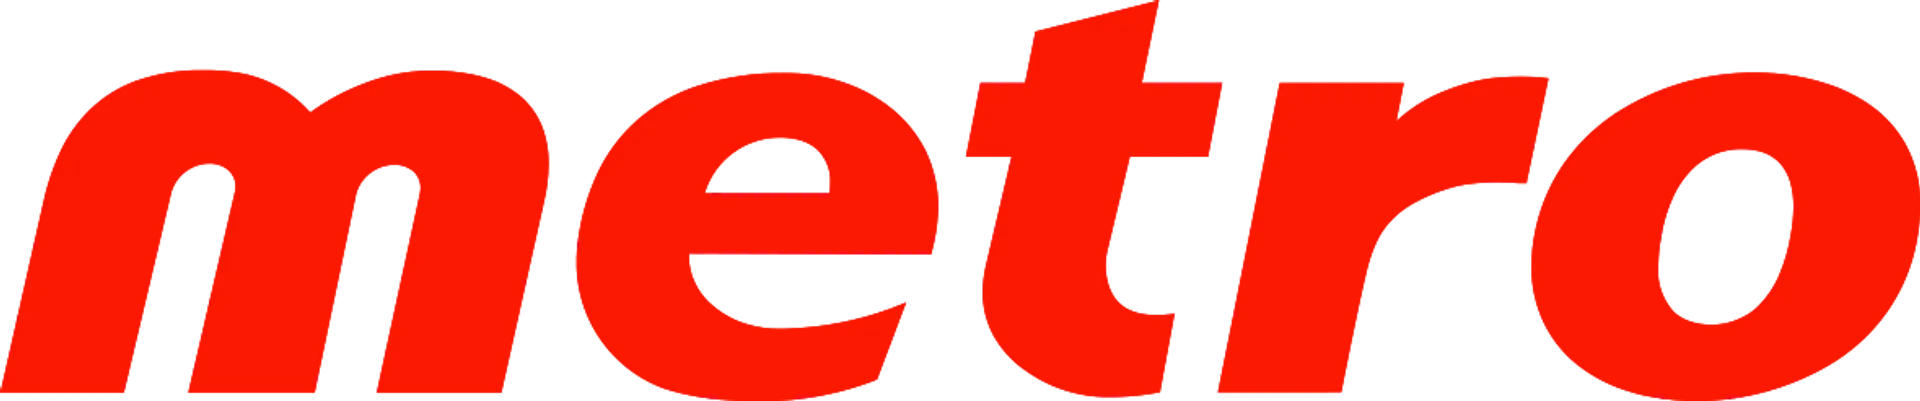 METRO logo de circulaire